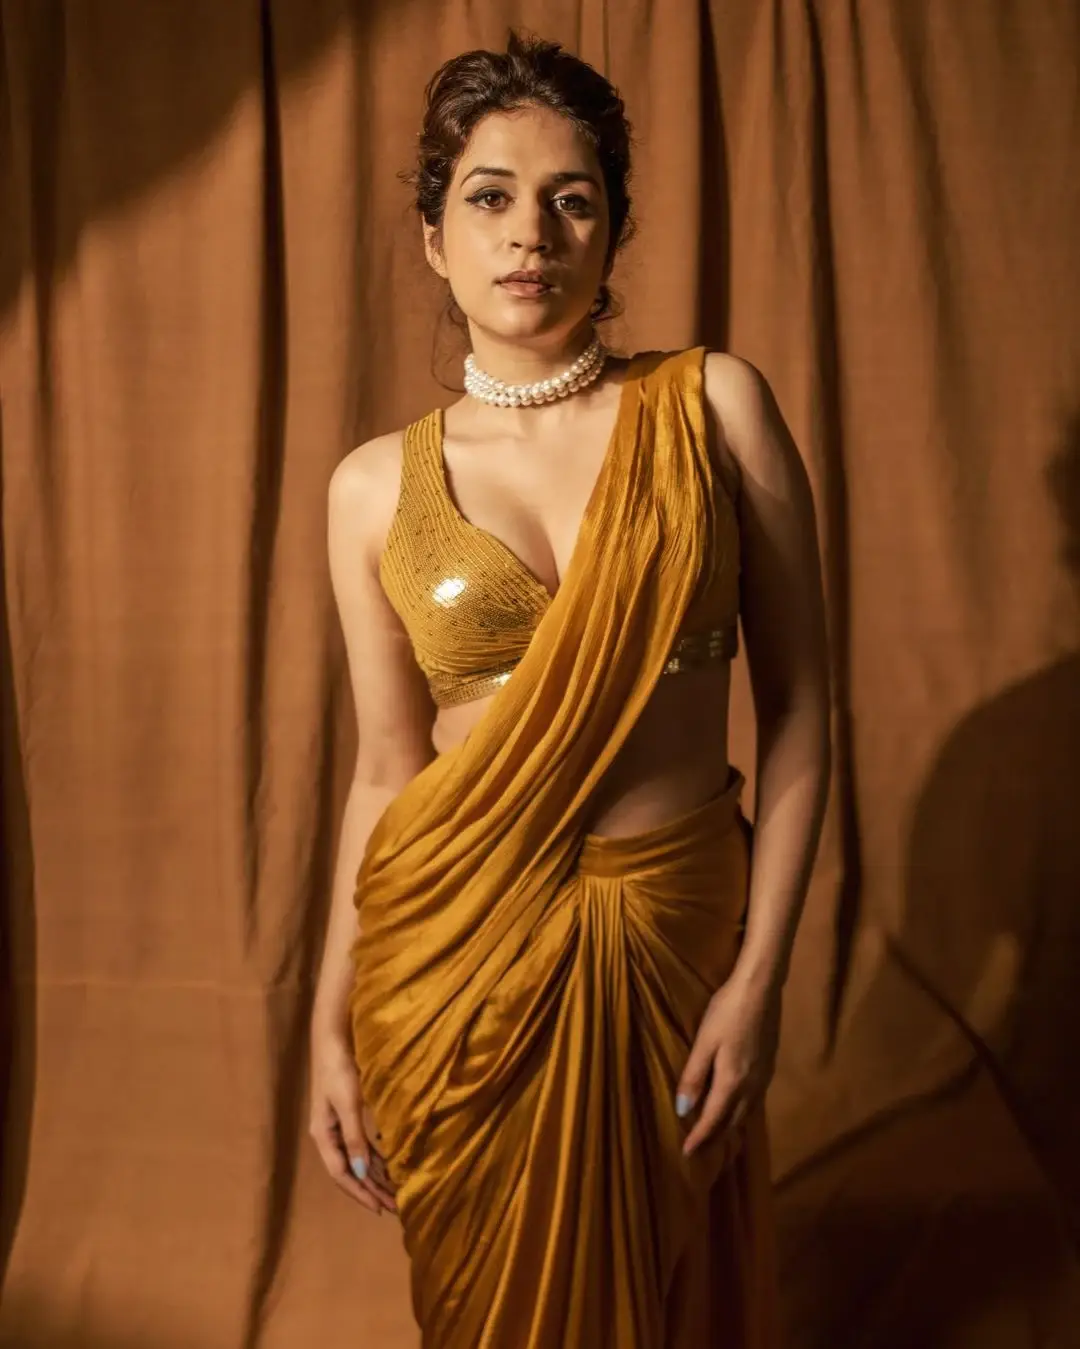 BEAUTIFUL INDIAN ACTRESS SHRADDHA DAS IN YELLOW SAREE 1